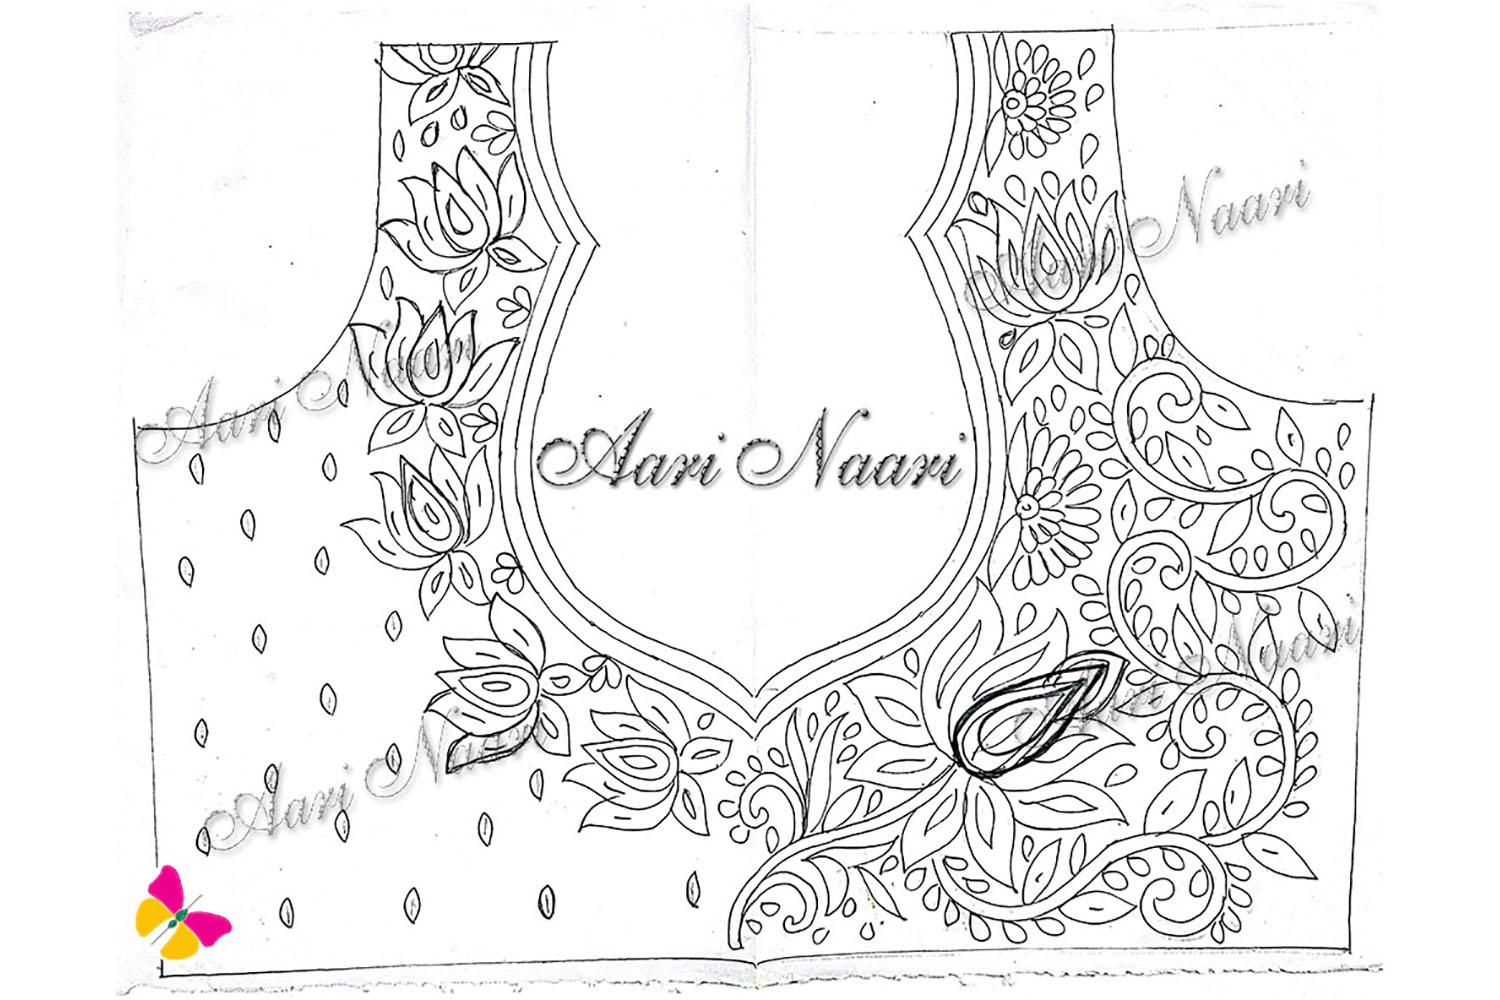 Aari work Lotus design3 tracing paper free download - Aari Naari